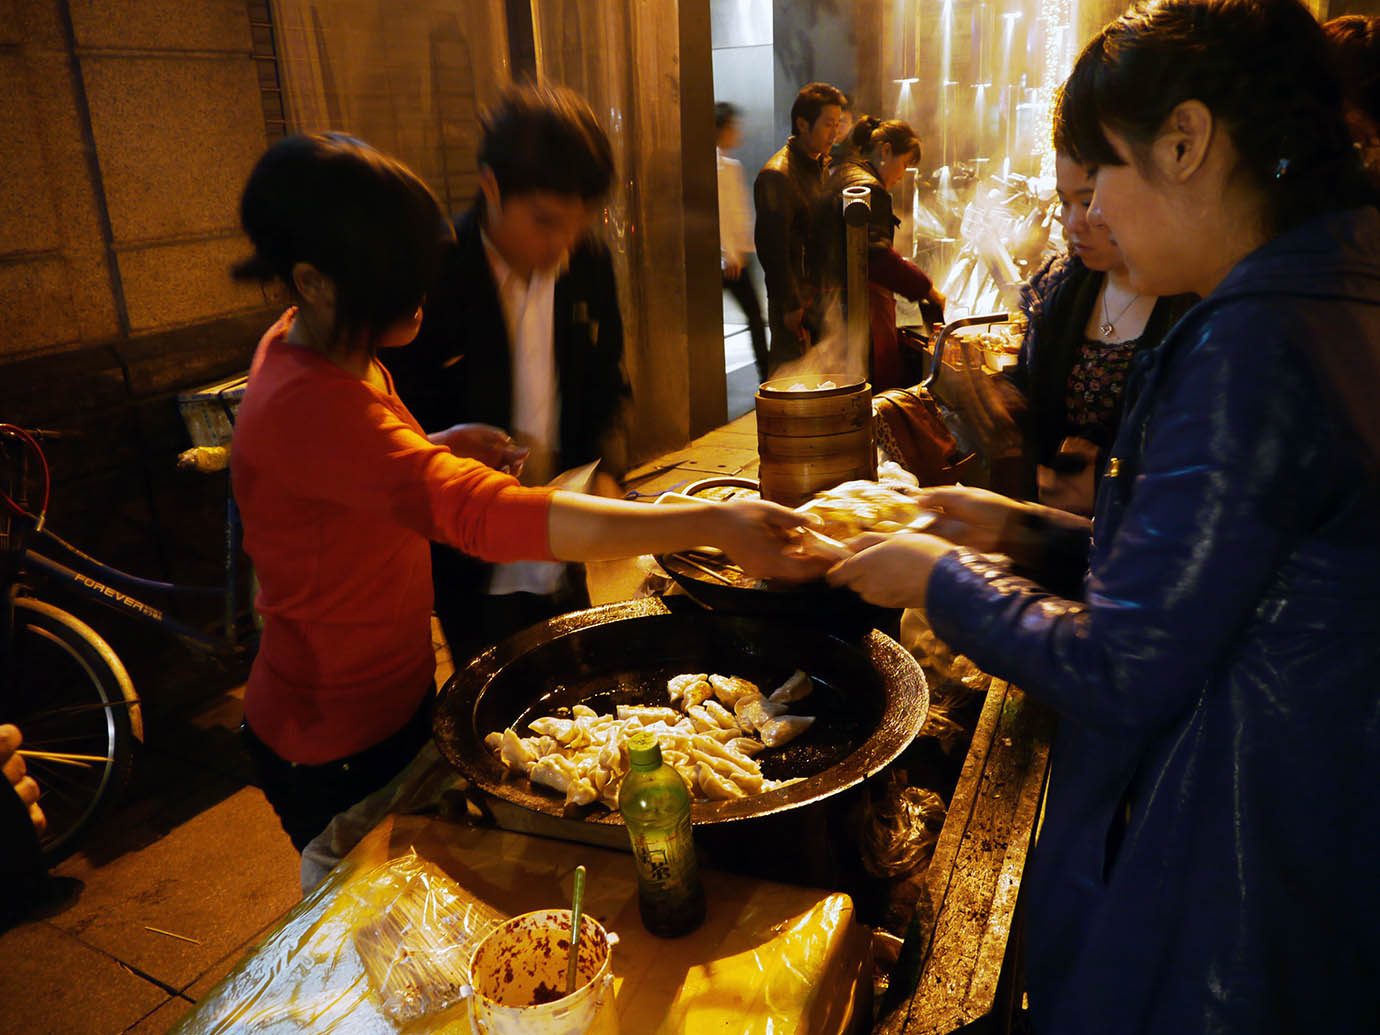 【異国グルメ】中国の屋台の焼き餃子がウマイ / 日本人には中国でも焼き餃子をオススメしたい